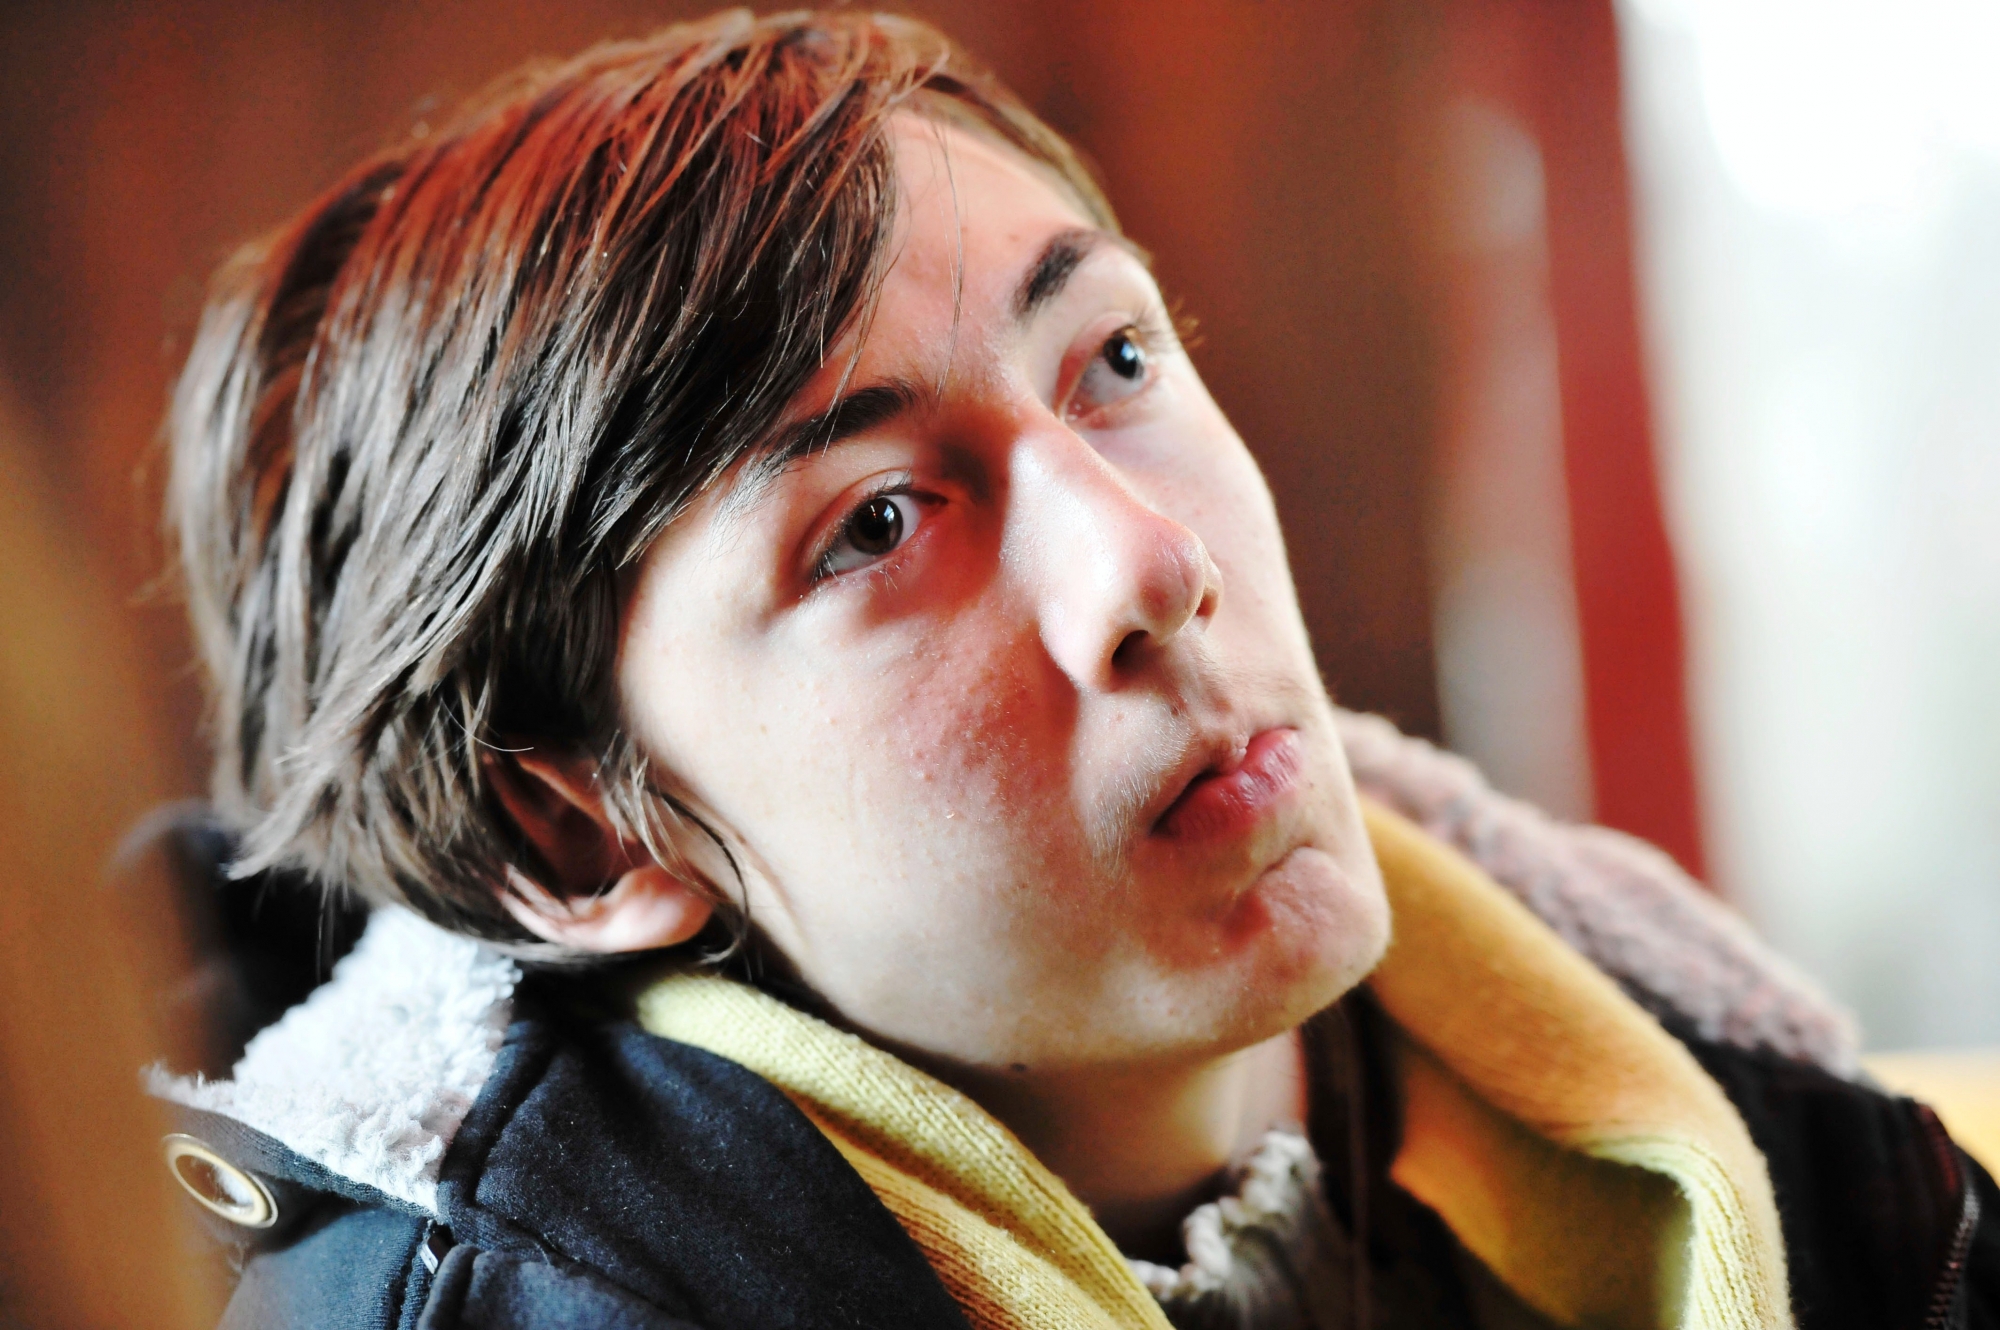 Luca Mongelli, lors de son passage à Sion en 2012. Il avait alors 18 ans.